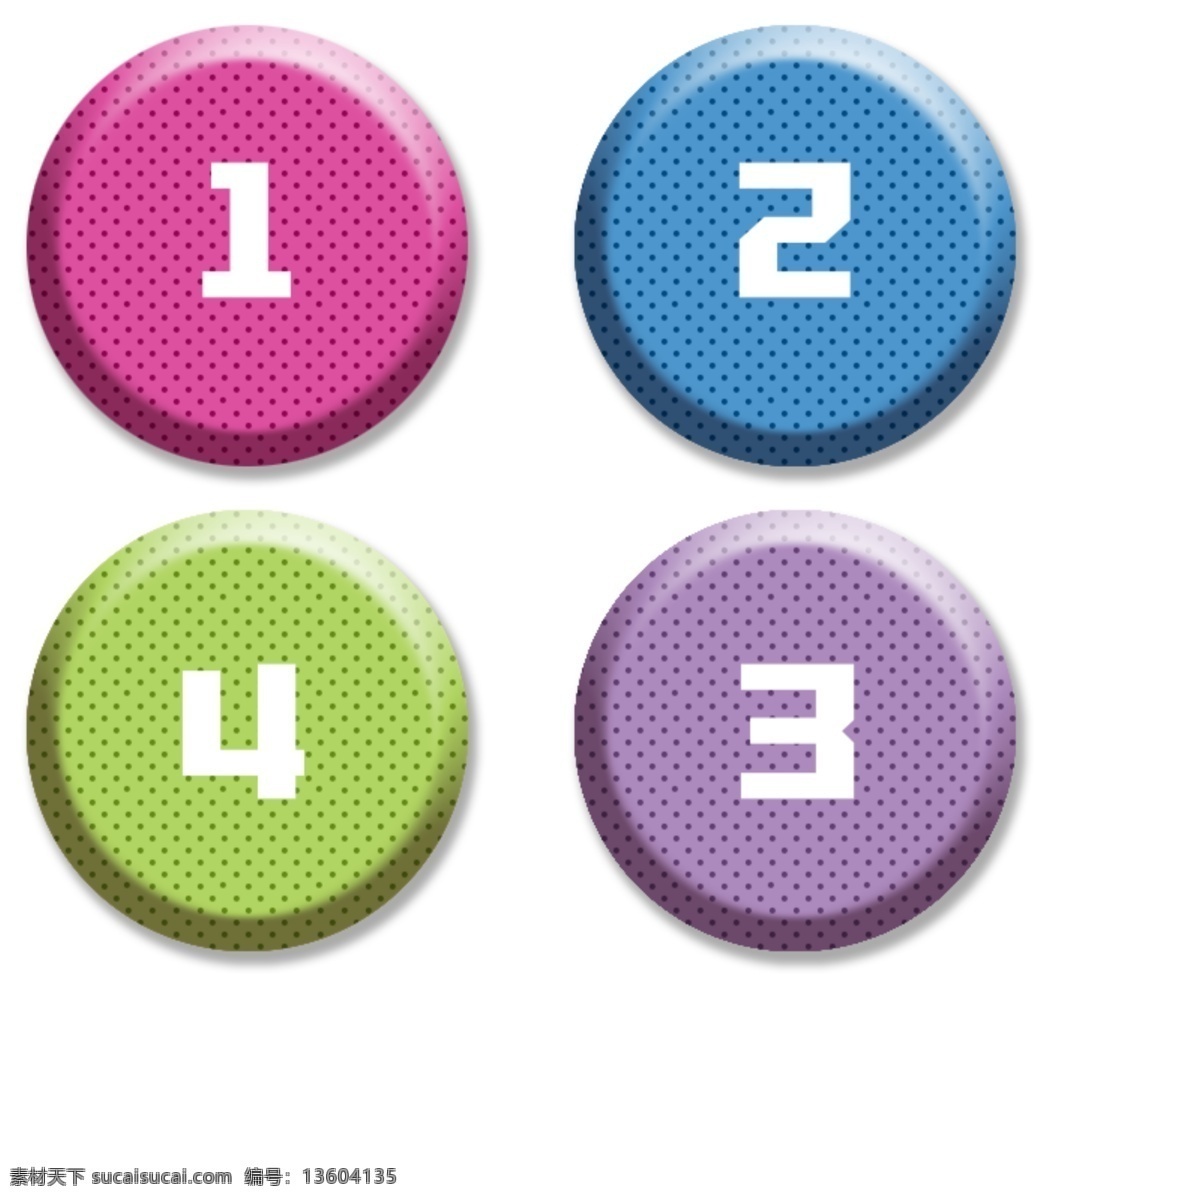 数字按钮图片 按钮 数字 目录 编号 圆形按钮 设计元素 标志图标 其他图标